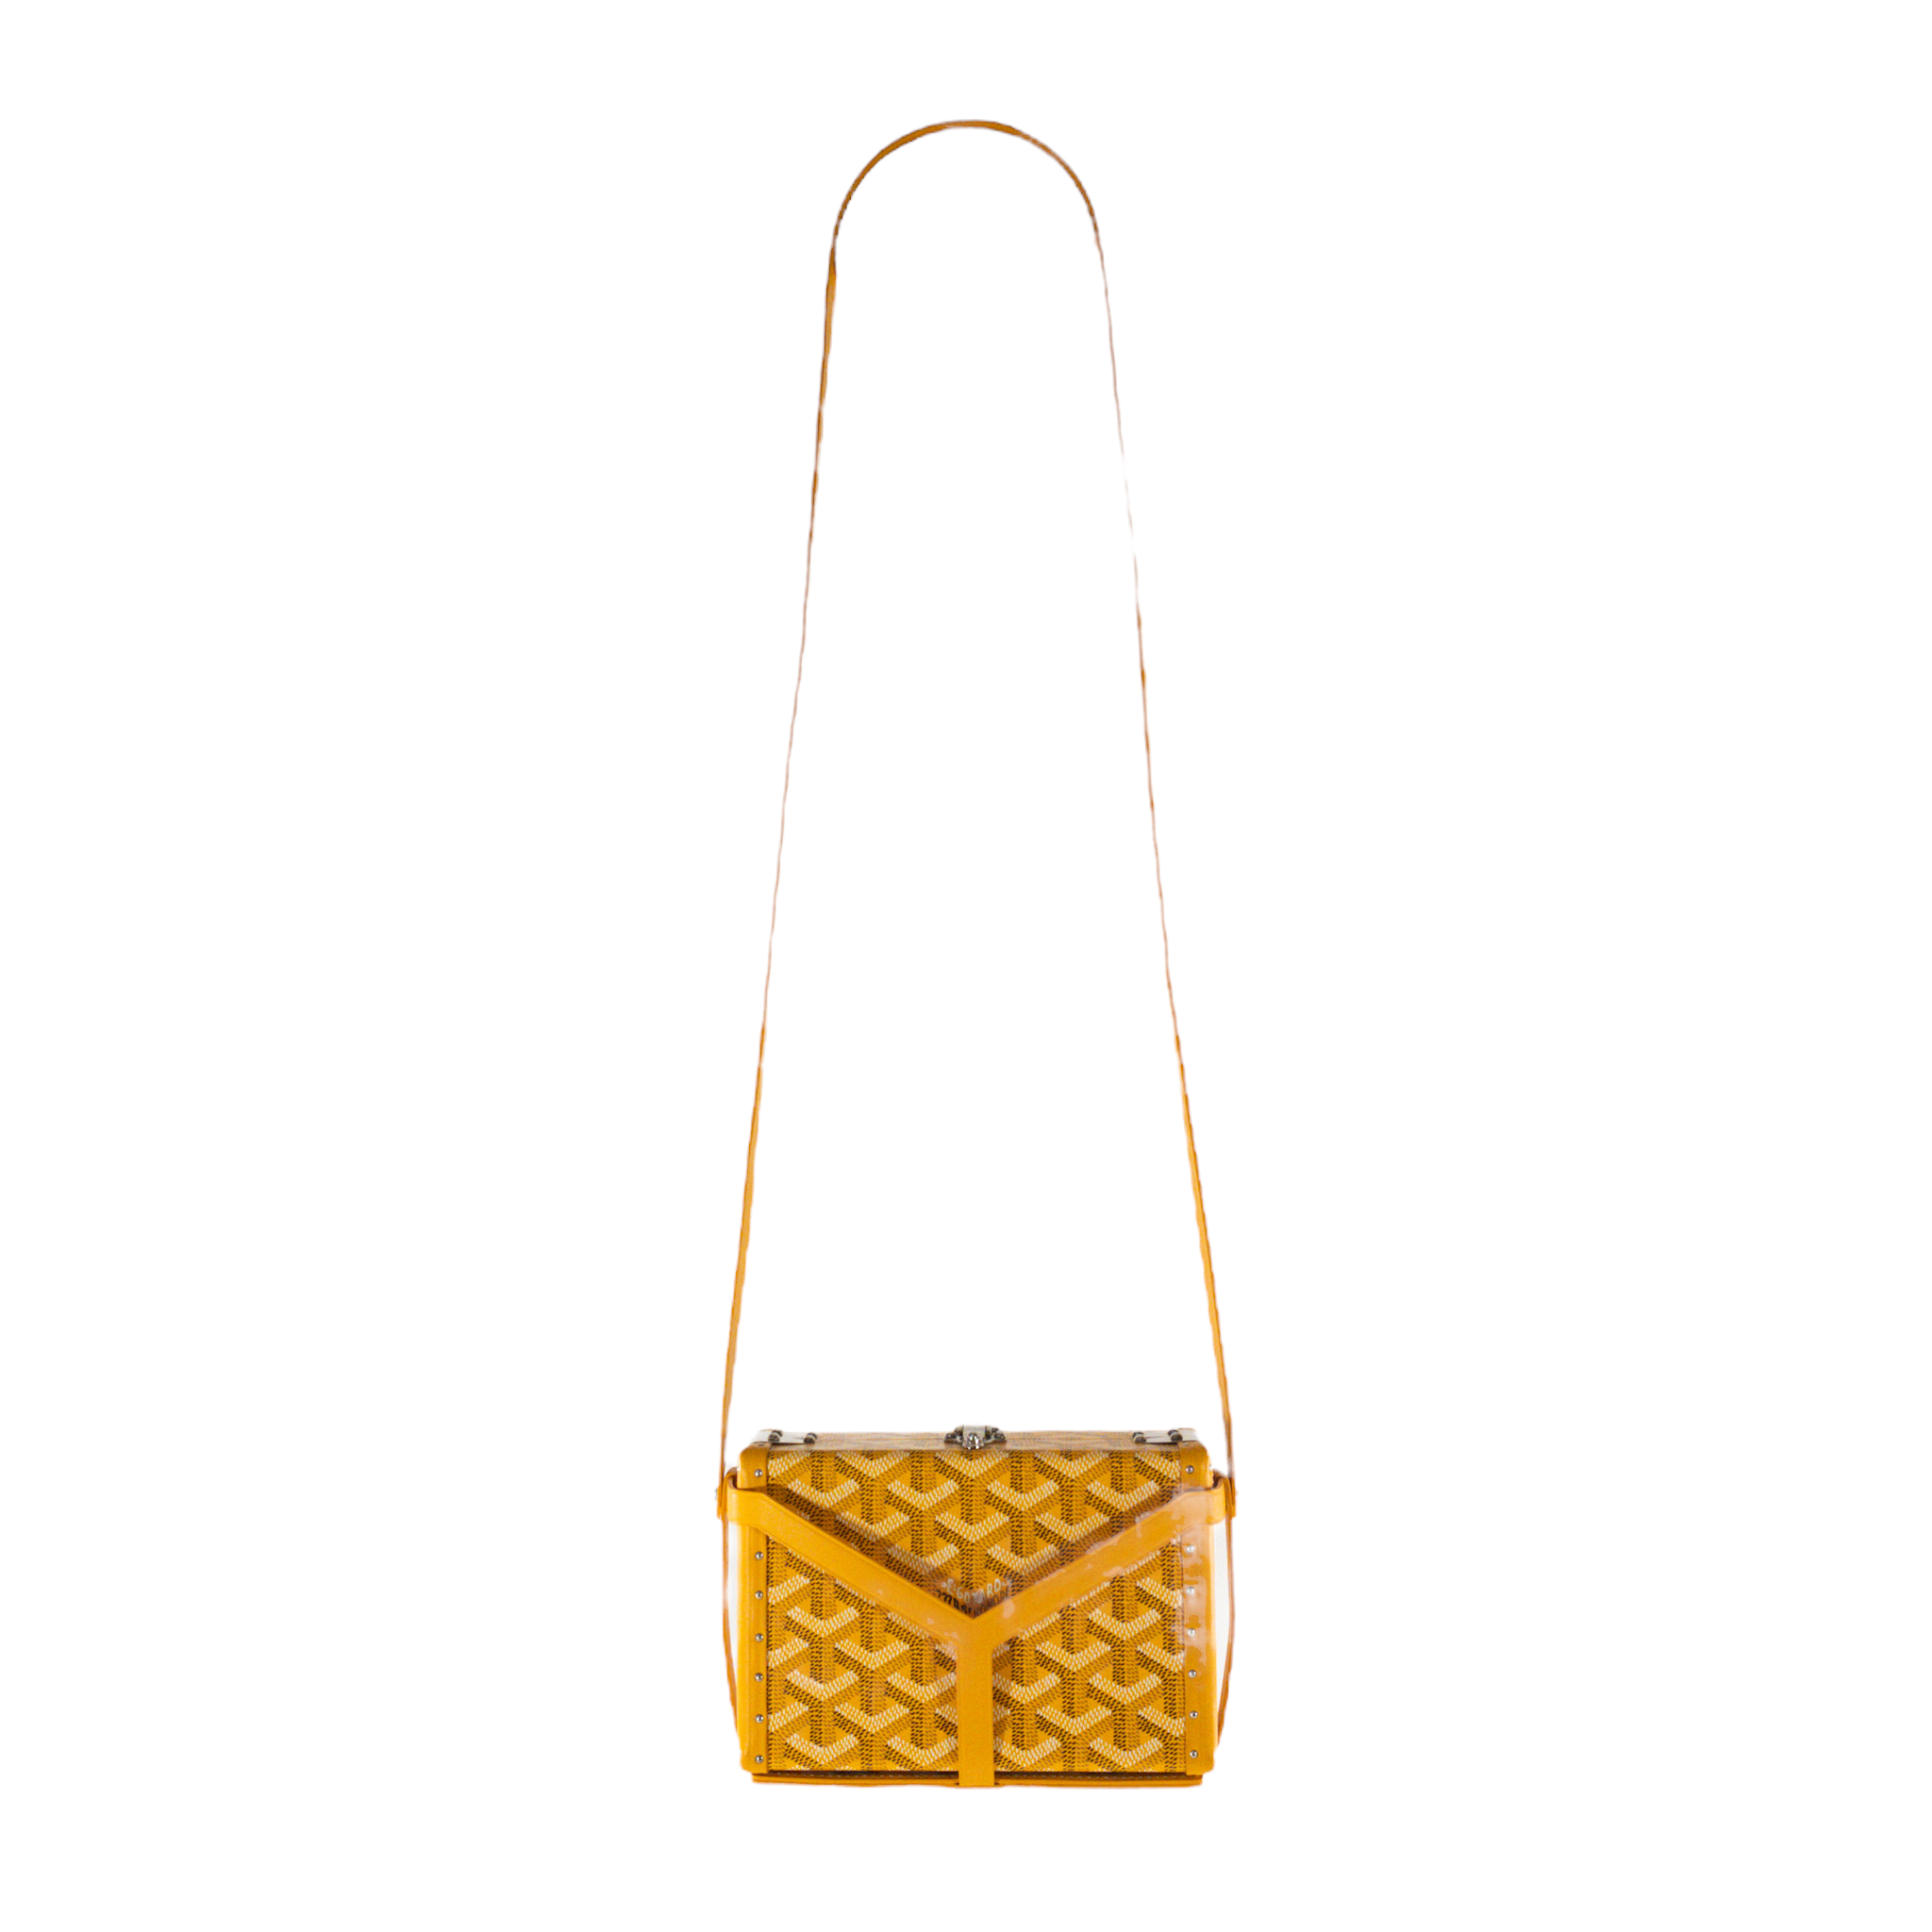 Goyard Yellow Mini Trunk Bag with Harness